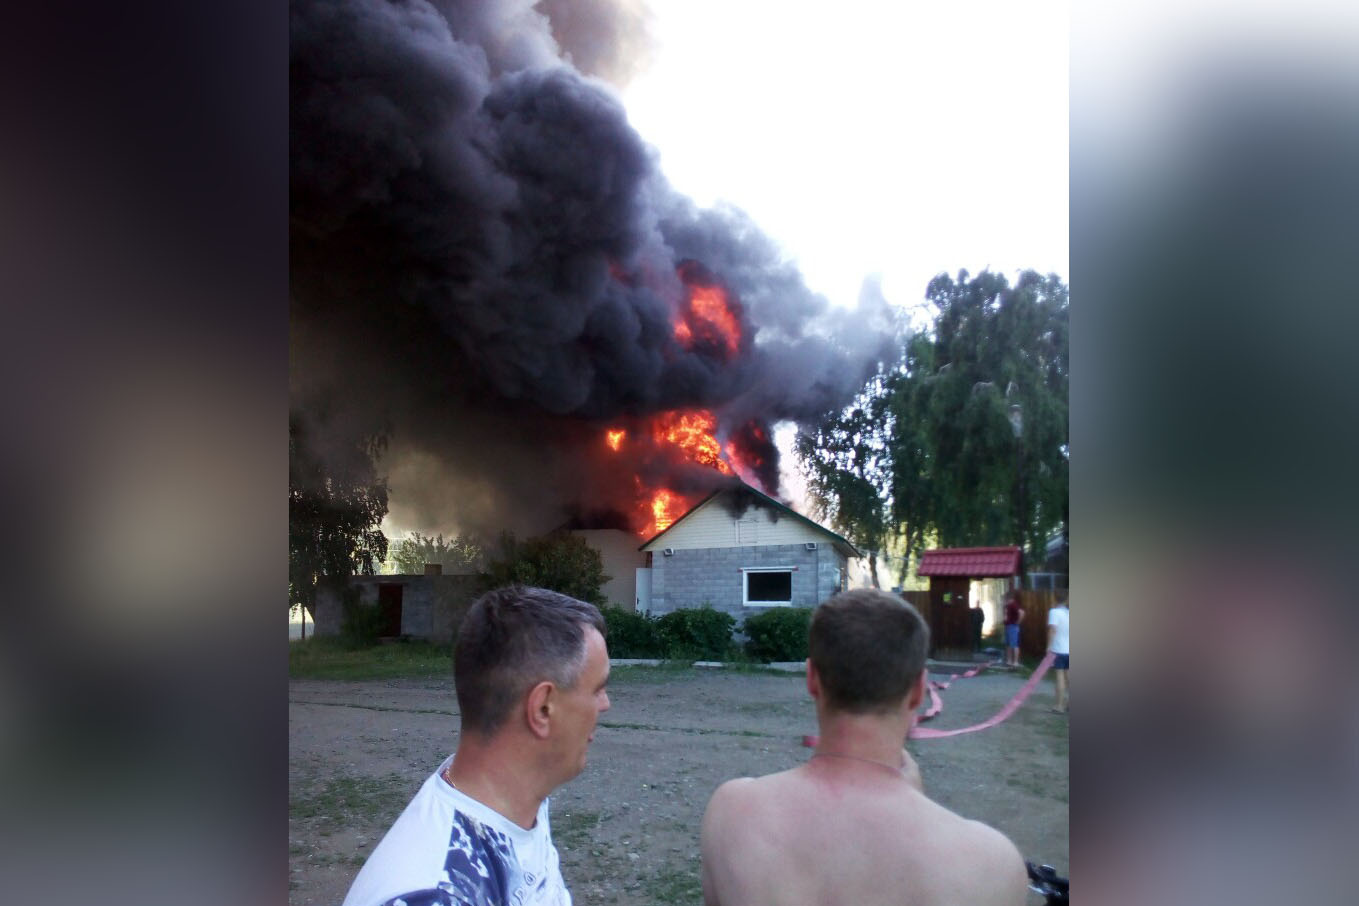 Во время пожара огонь поднимался над крышей строений на несколько метров